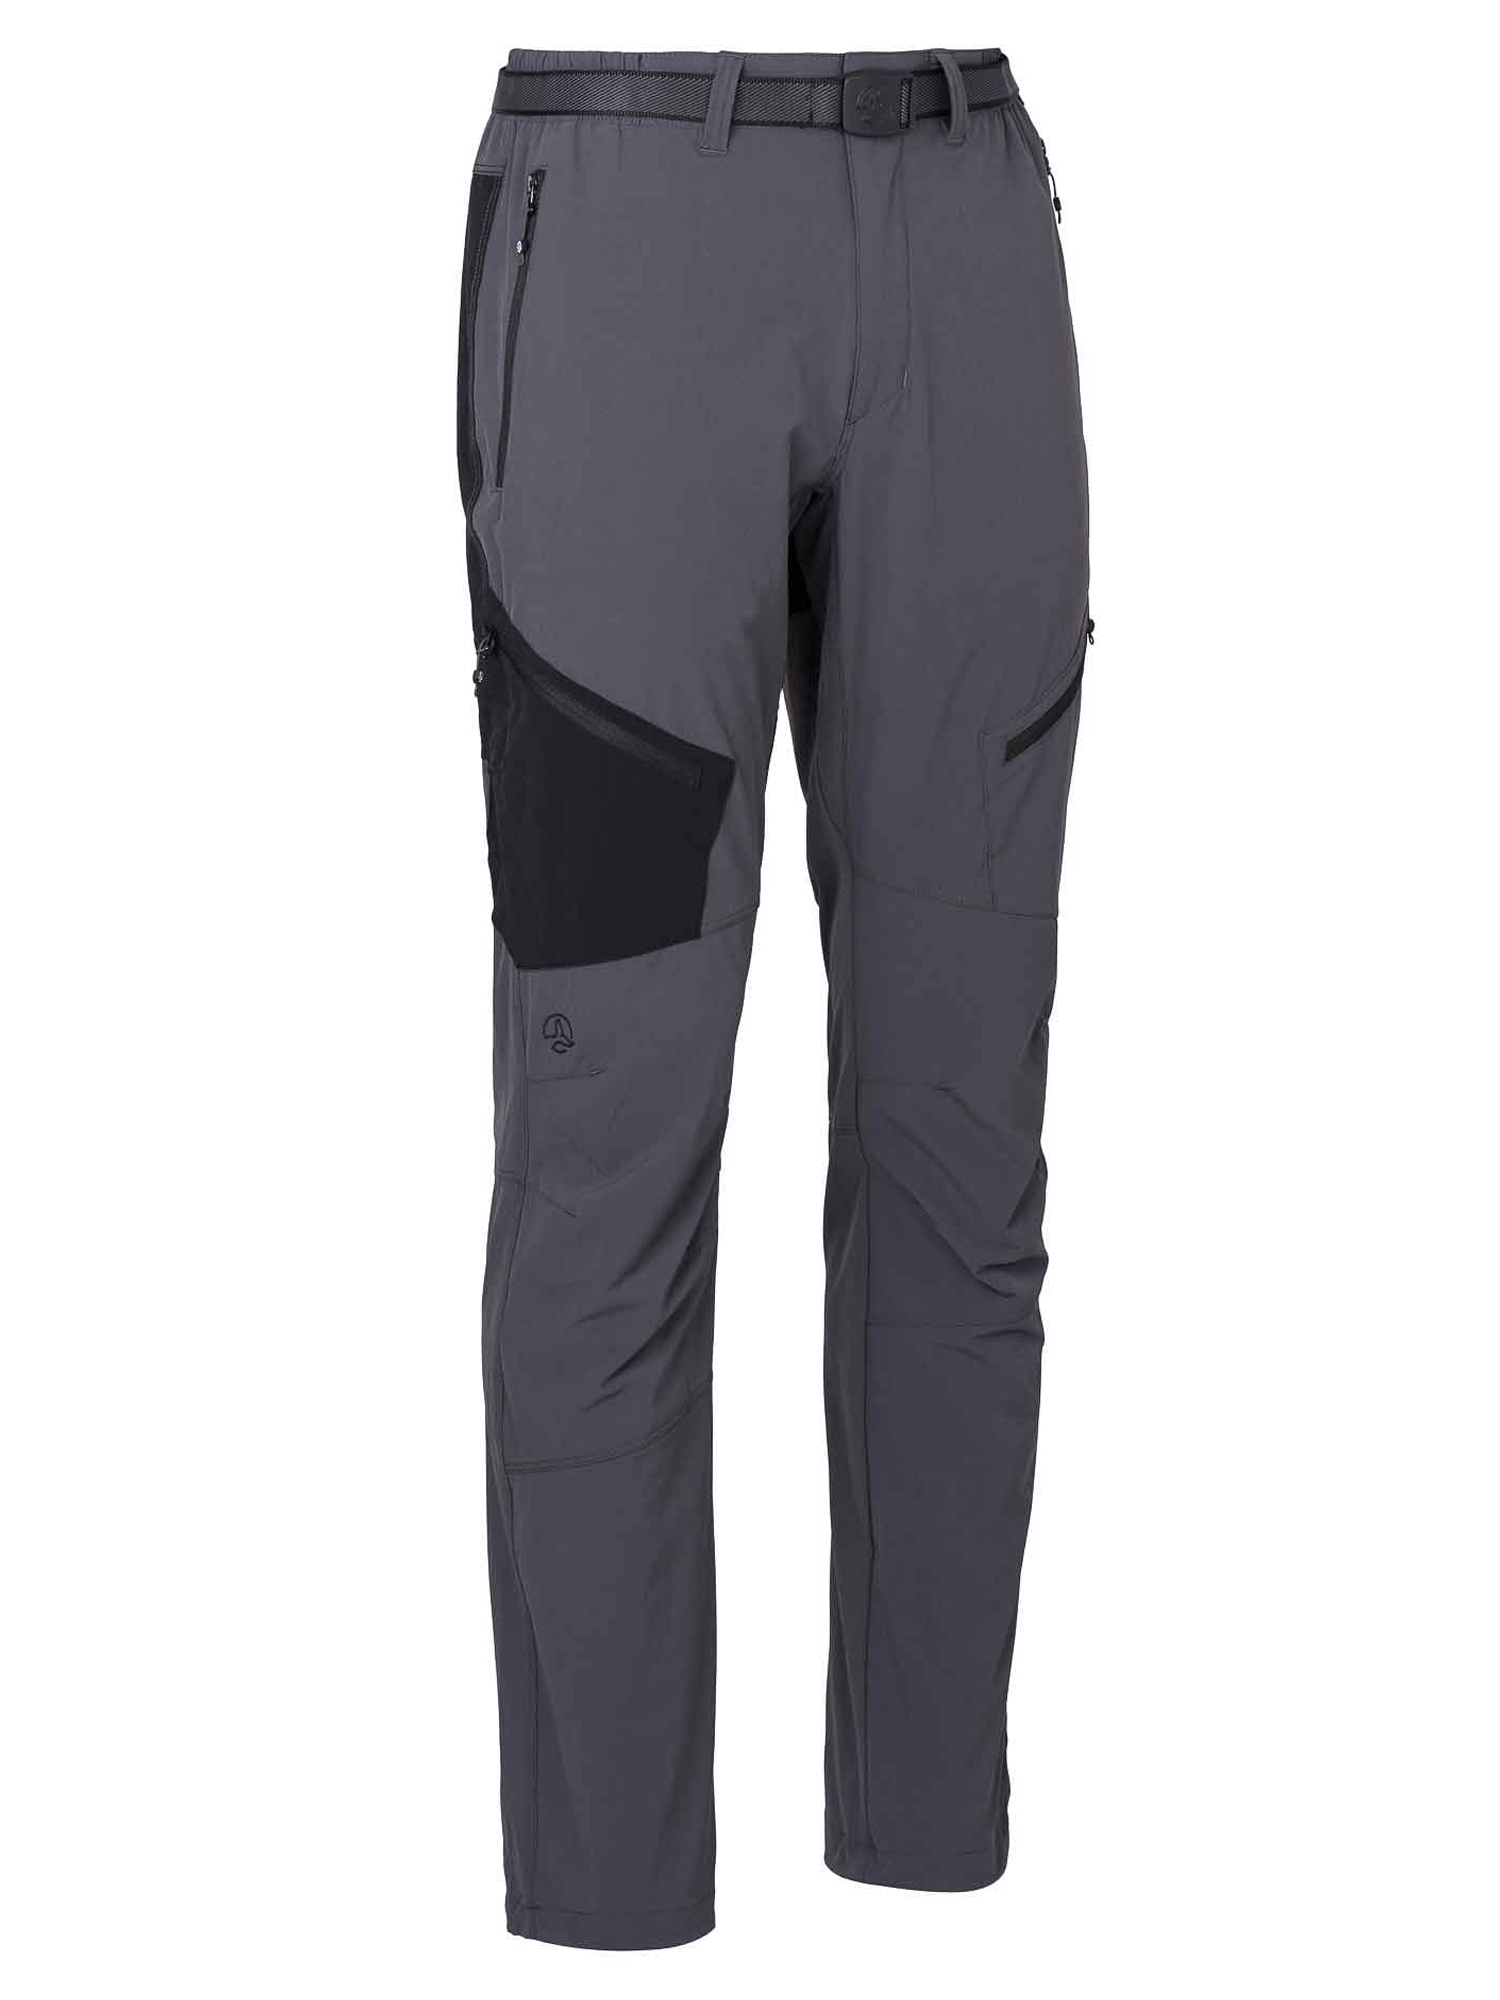 Спортивные брюки мужские Ternua Torlok Pt M серые 2XL